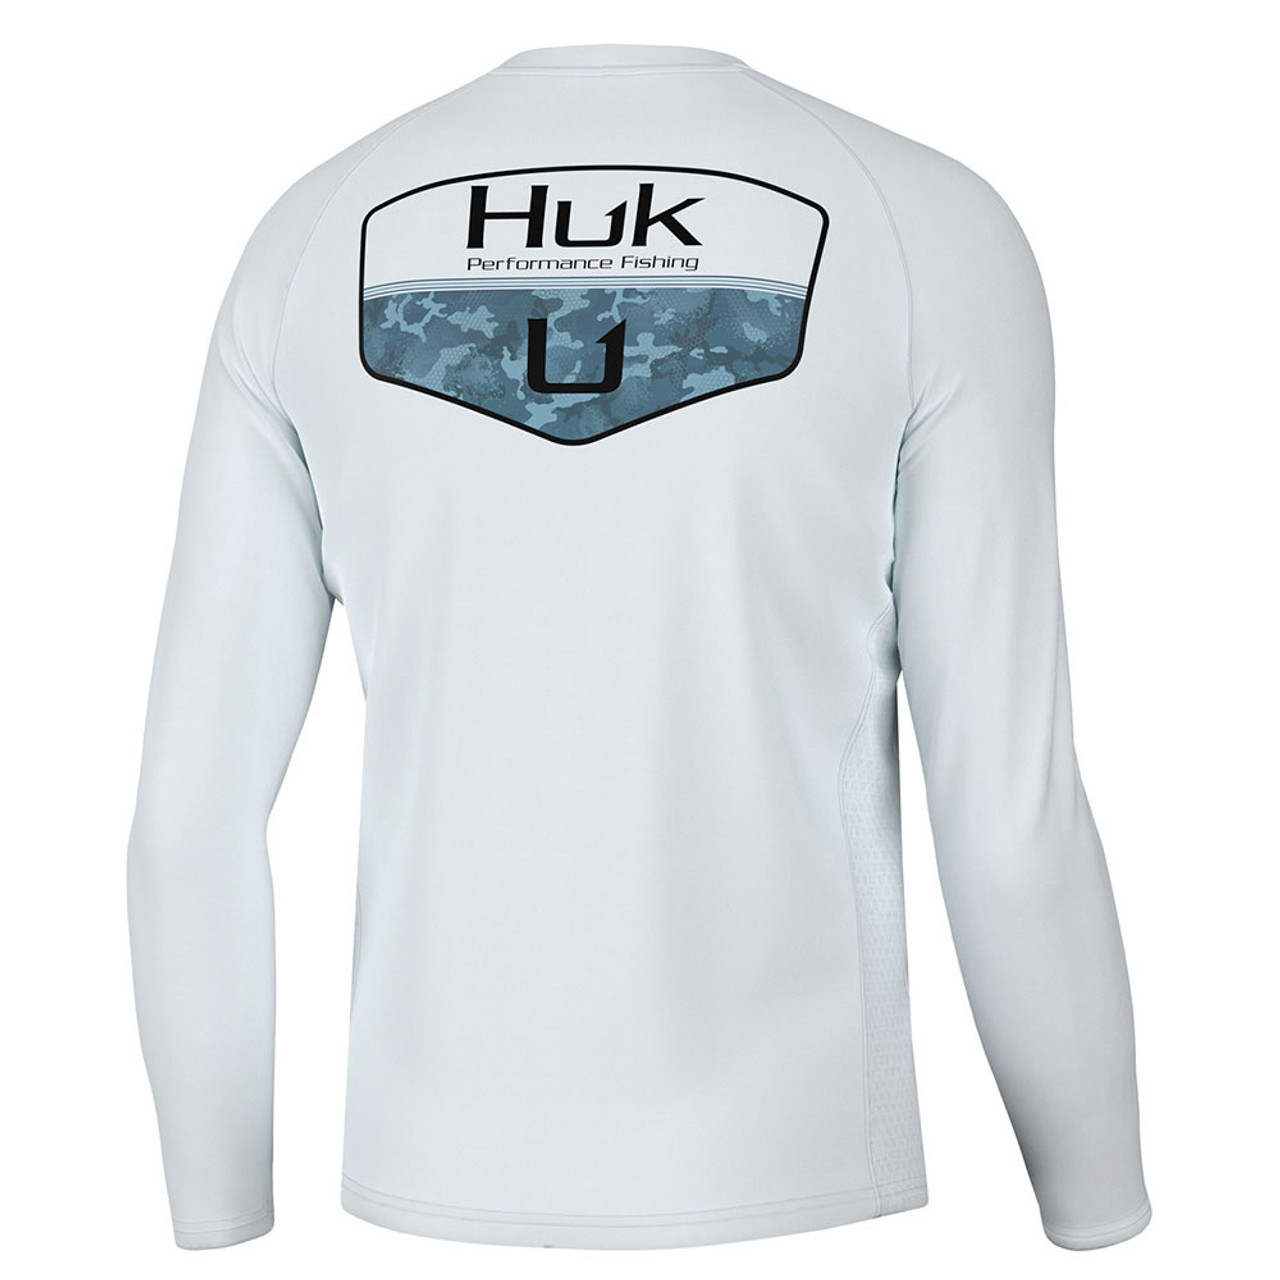 Huk Youth Fishing Wear: Functional & Fun!